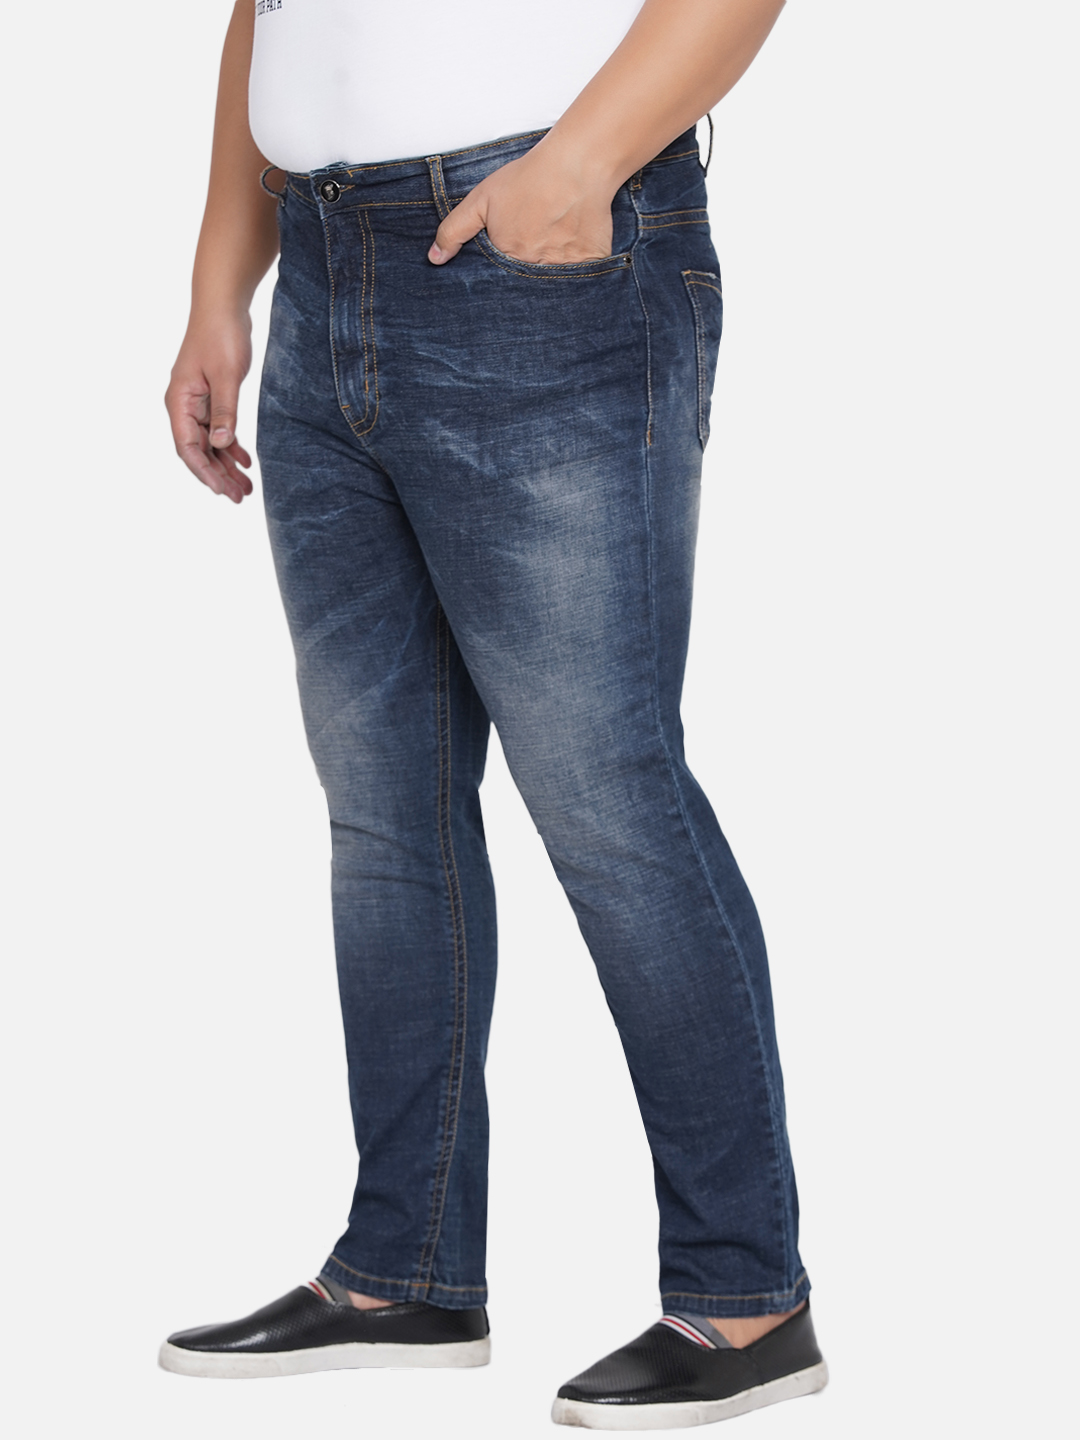 bottomwear/jeans/PJPJ6045/pjpj6045-4.jpg